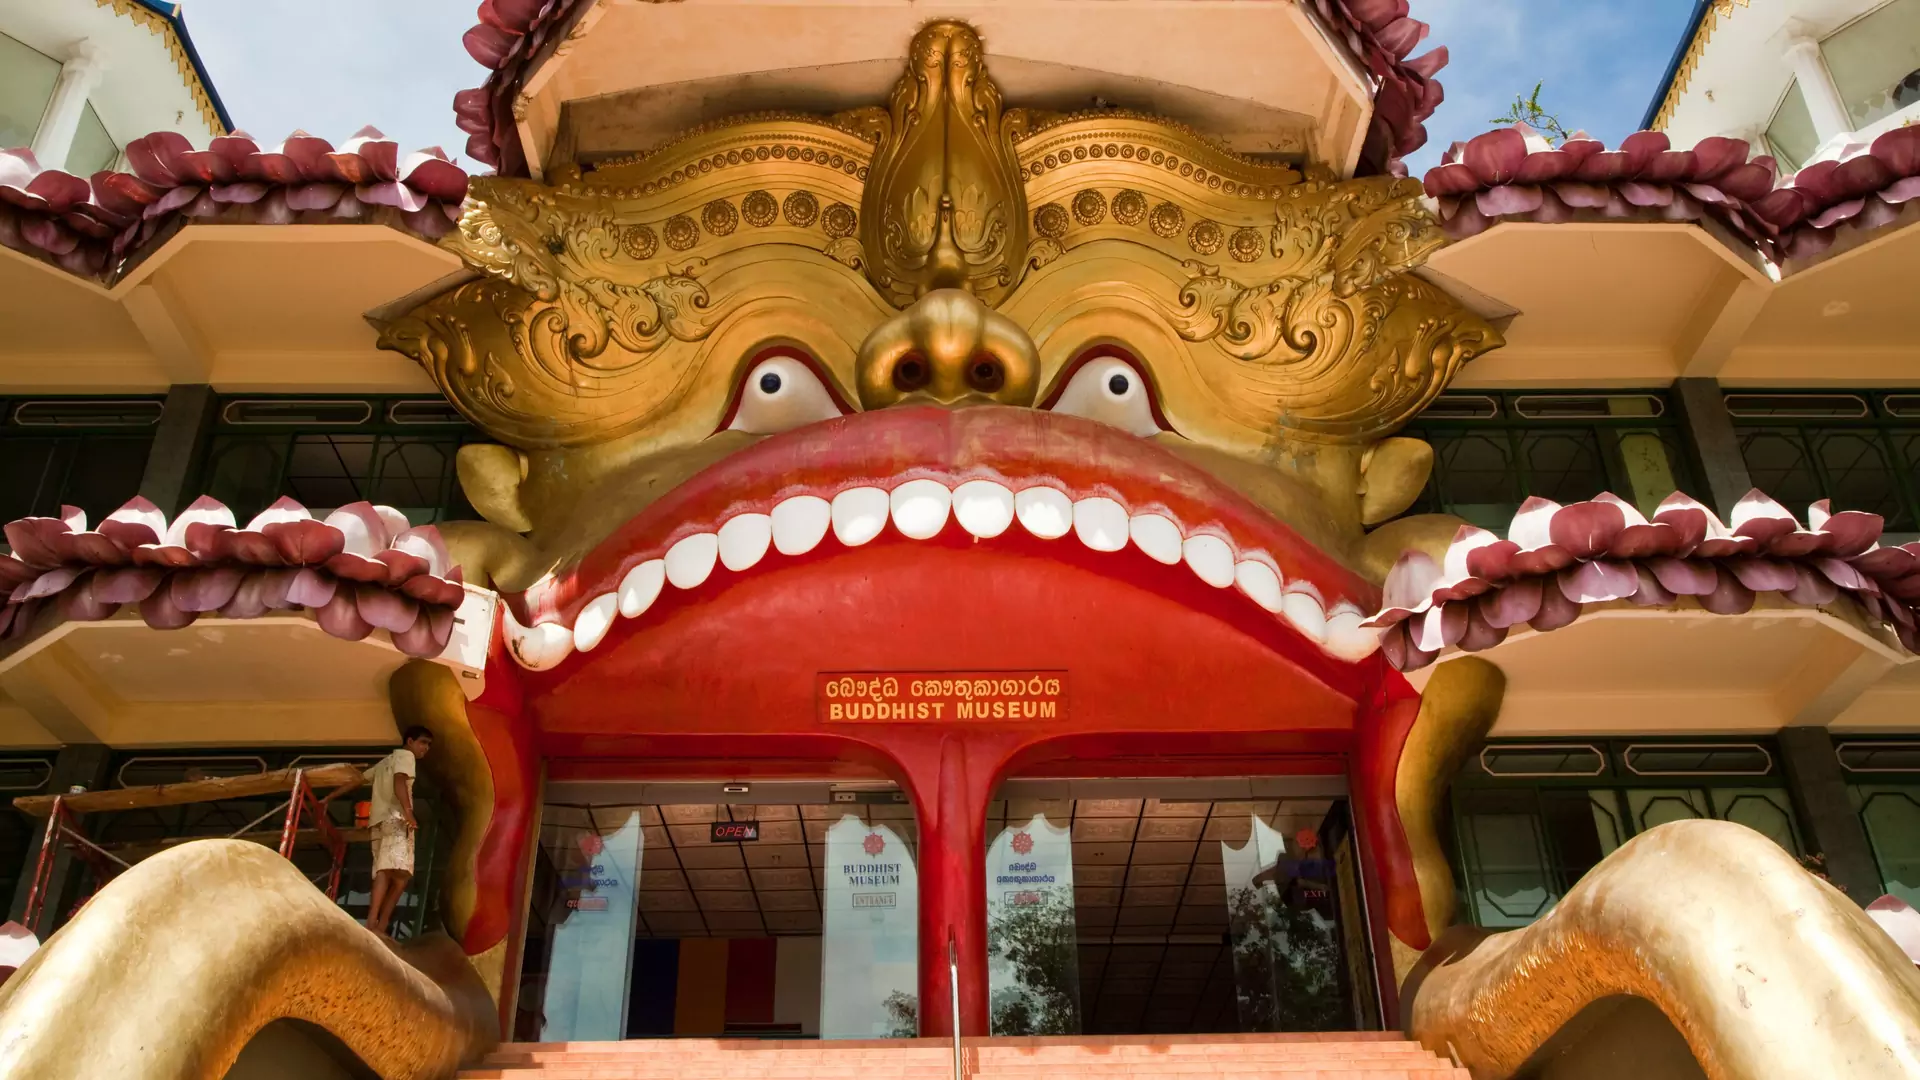 Poszukiwania zęba Buddy na Sri Lance. Oryginalny pomysł na wakacje od Lidl Podróże